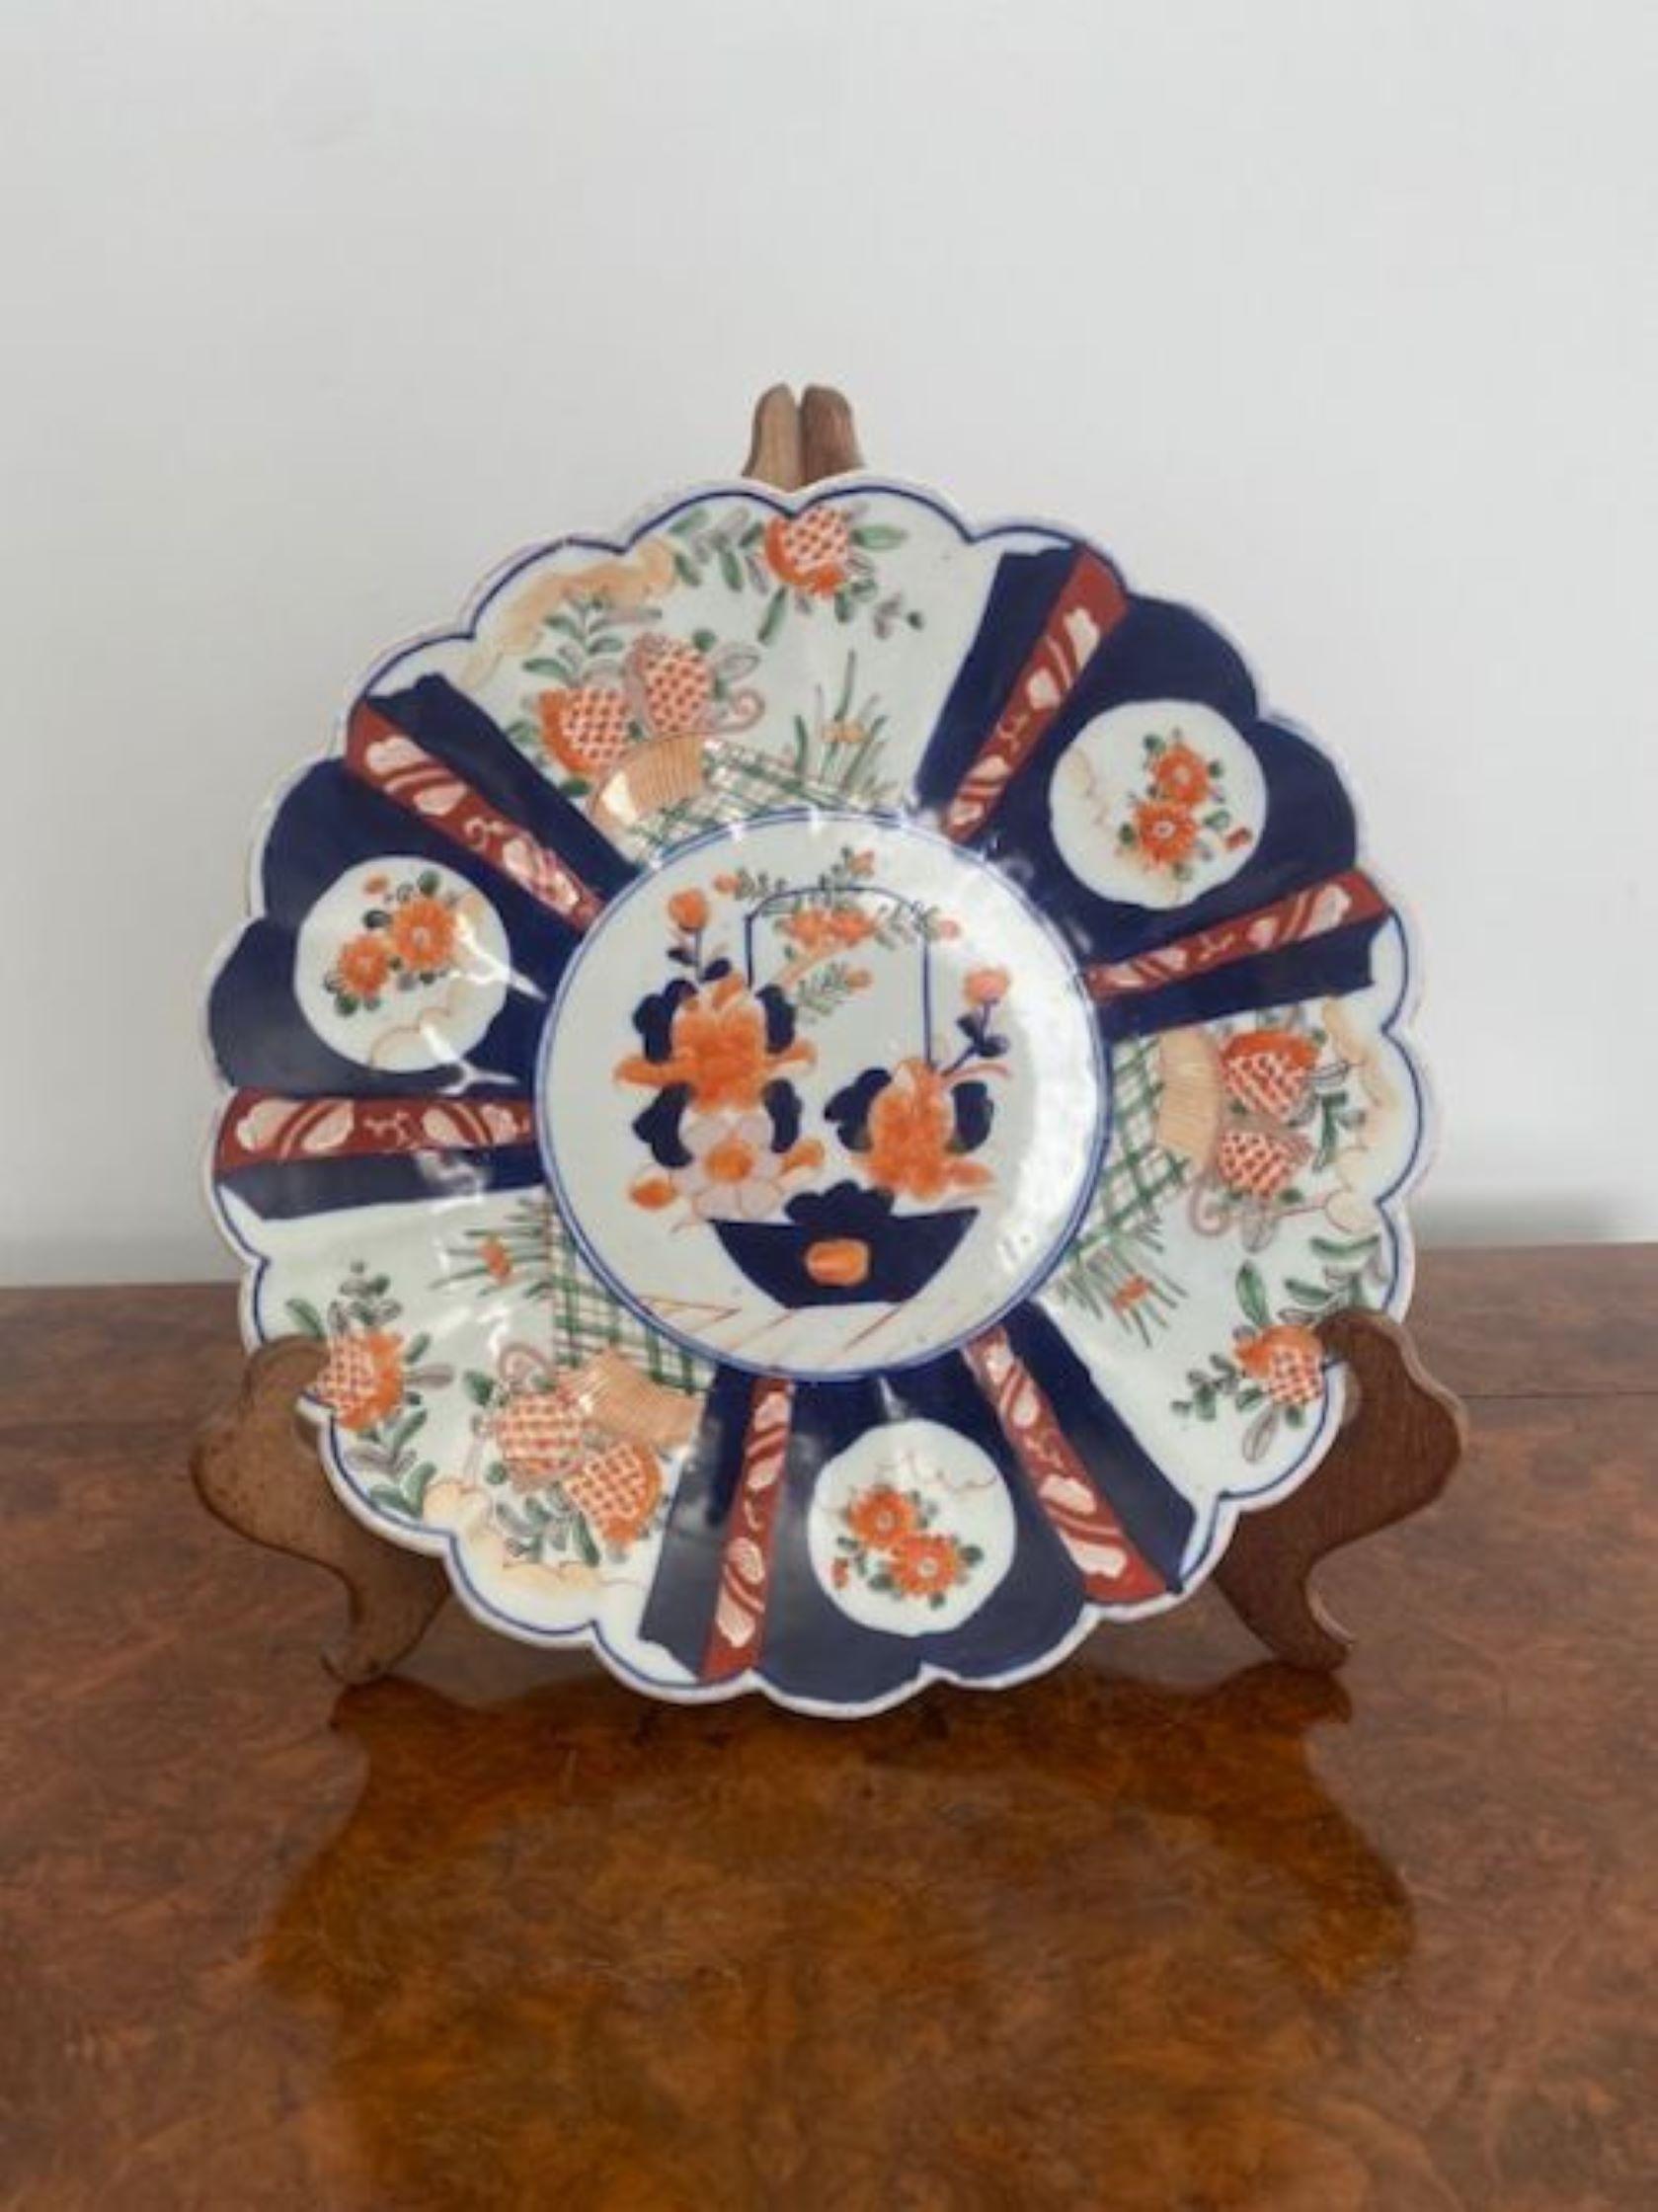 Antike japanische Qualität Imari Teller mit einer Qualität gewellten Rand mit wunderschönen handgemalten Dekoration mit Blumen, Blättern und einem Korb von Blumen in der Mitte in rot, grün, orange, blau und weiß Farben